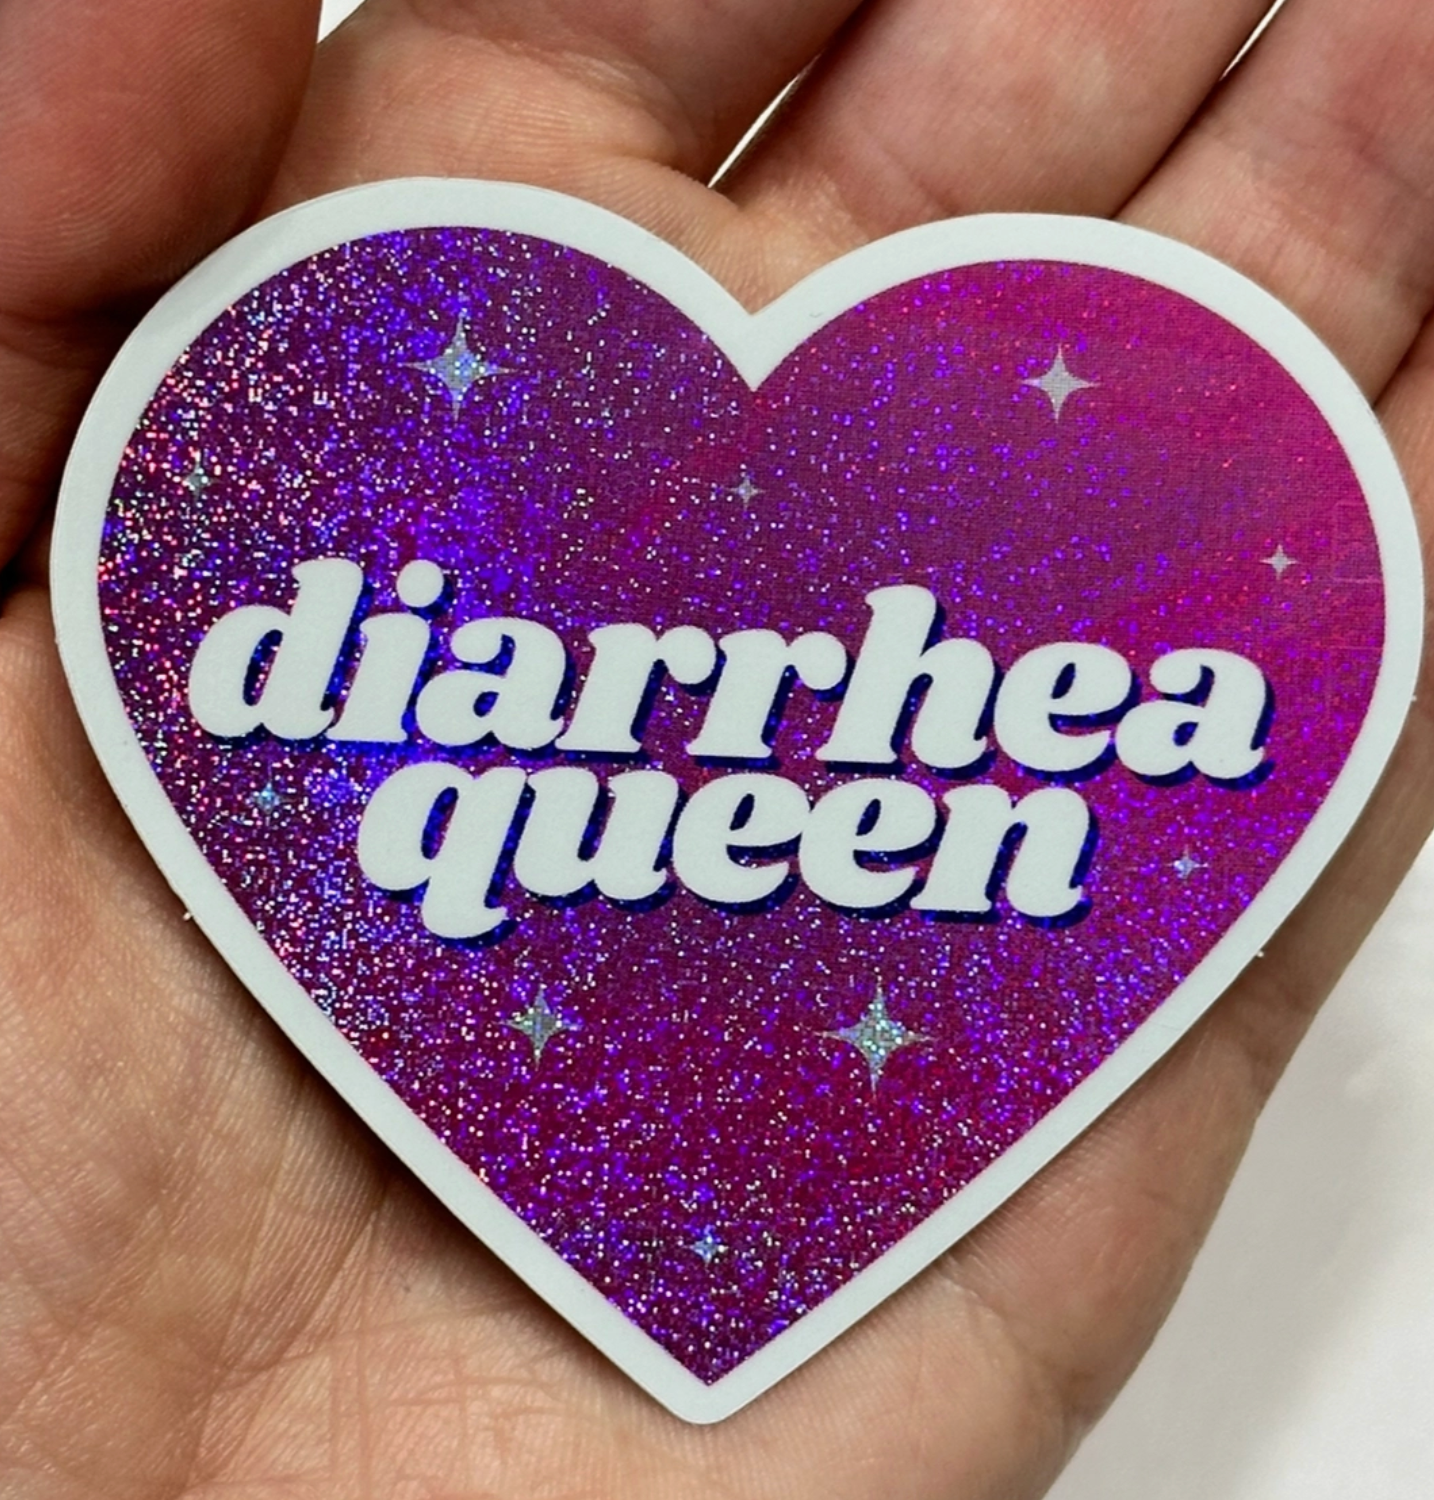 Diarrhea Queen Pink Glitter Sticker